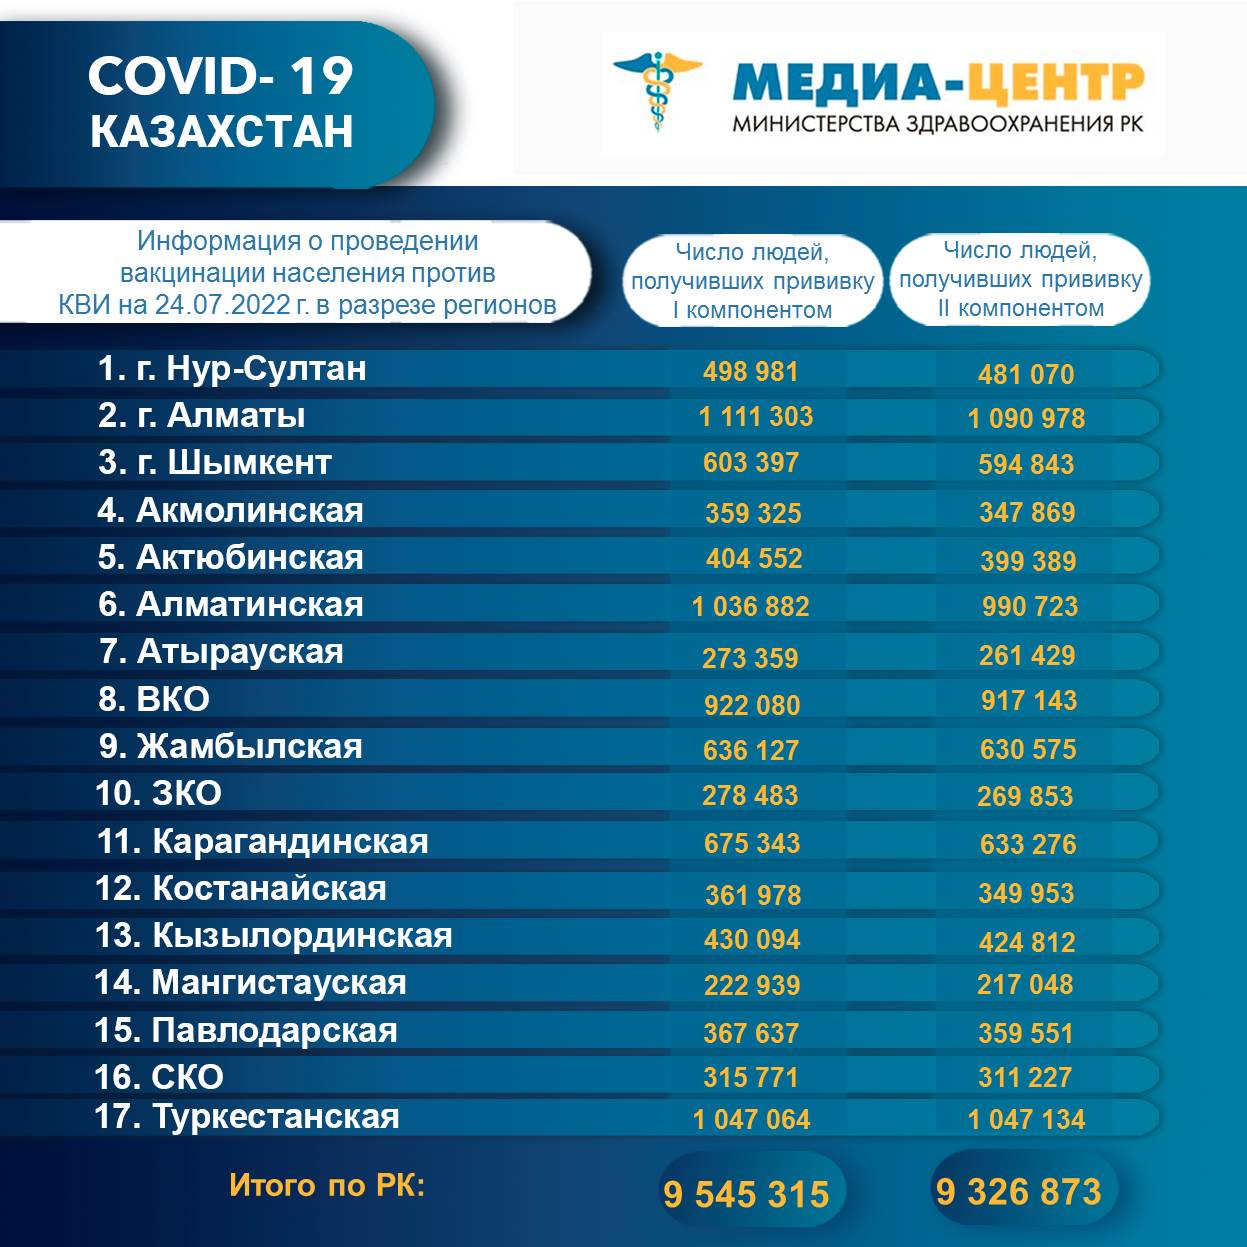 I компонентом 9 545 315 человек провакцинировано в Казахстане на 24.07.2022 г, II компонентом 9 326 873 человек. Ревакцинировано – 4 971 327